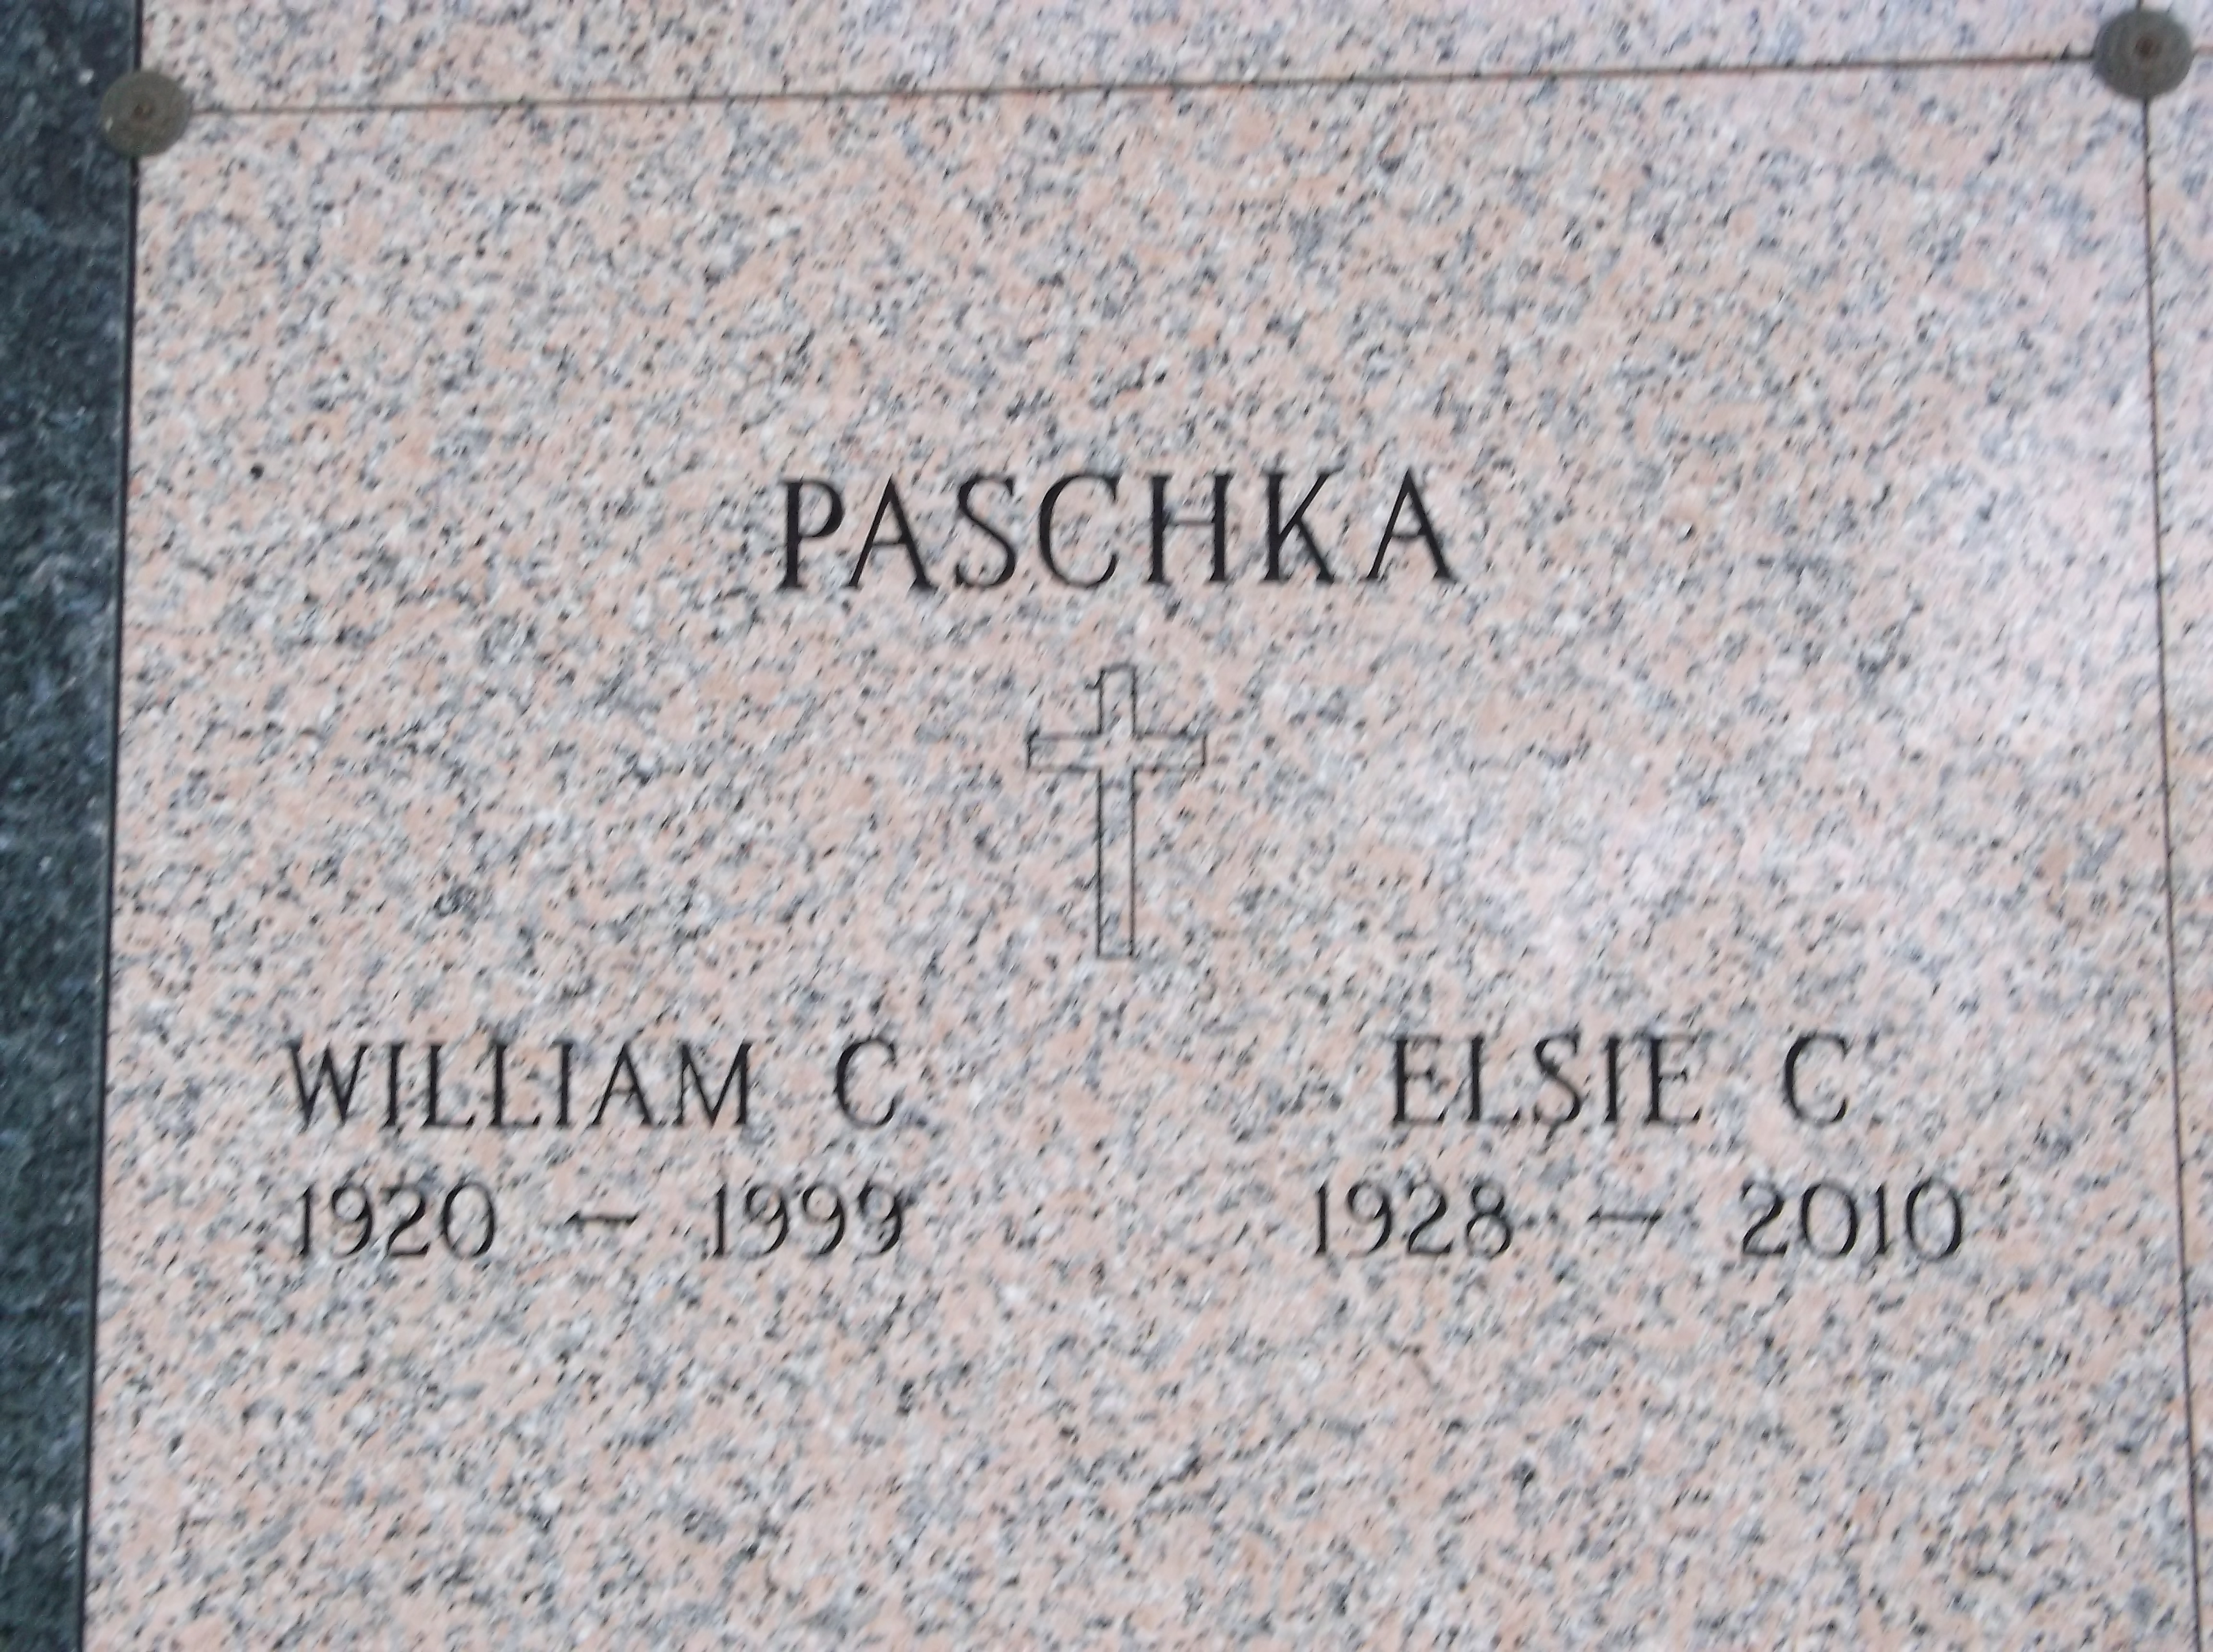 William C Paschka